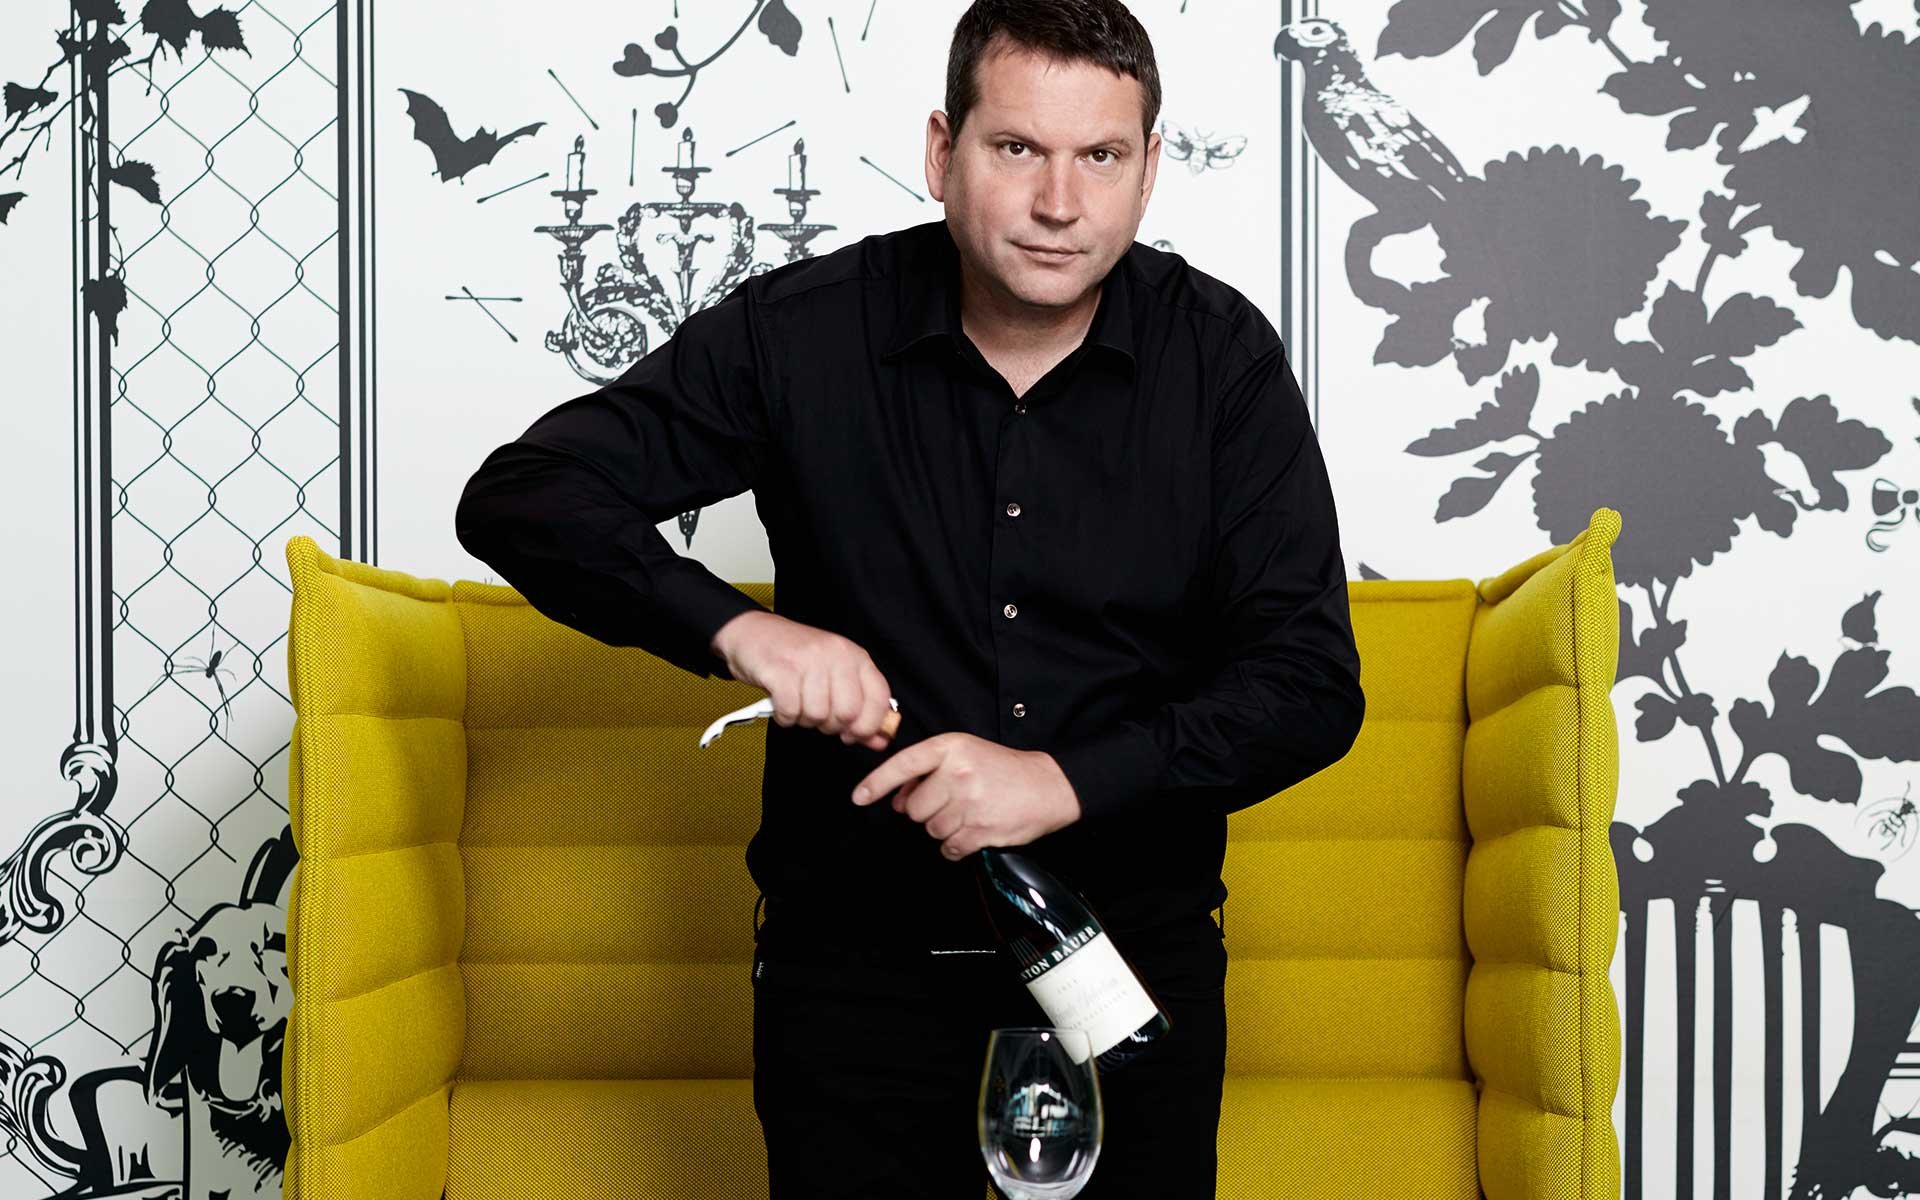 Der Rotwein der Charity-Edition ist ein Blauer Zweigelt von Anton Bauer aus Feuersbrunn am Wagram.